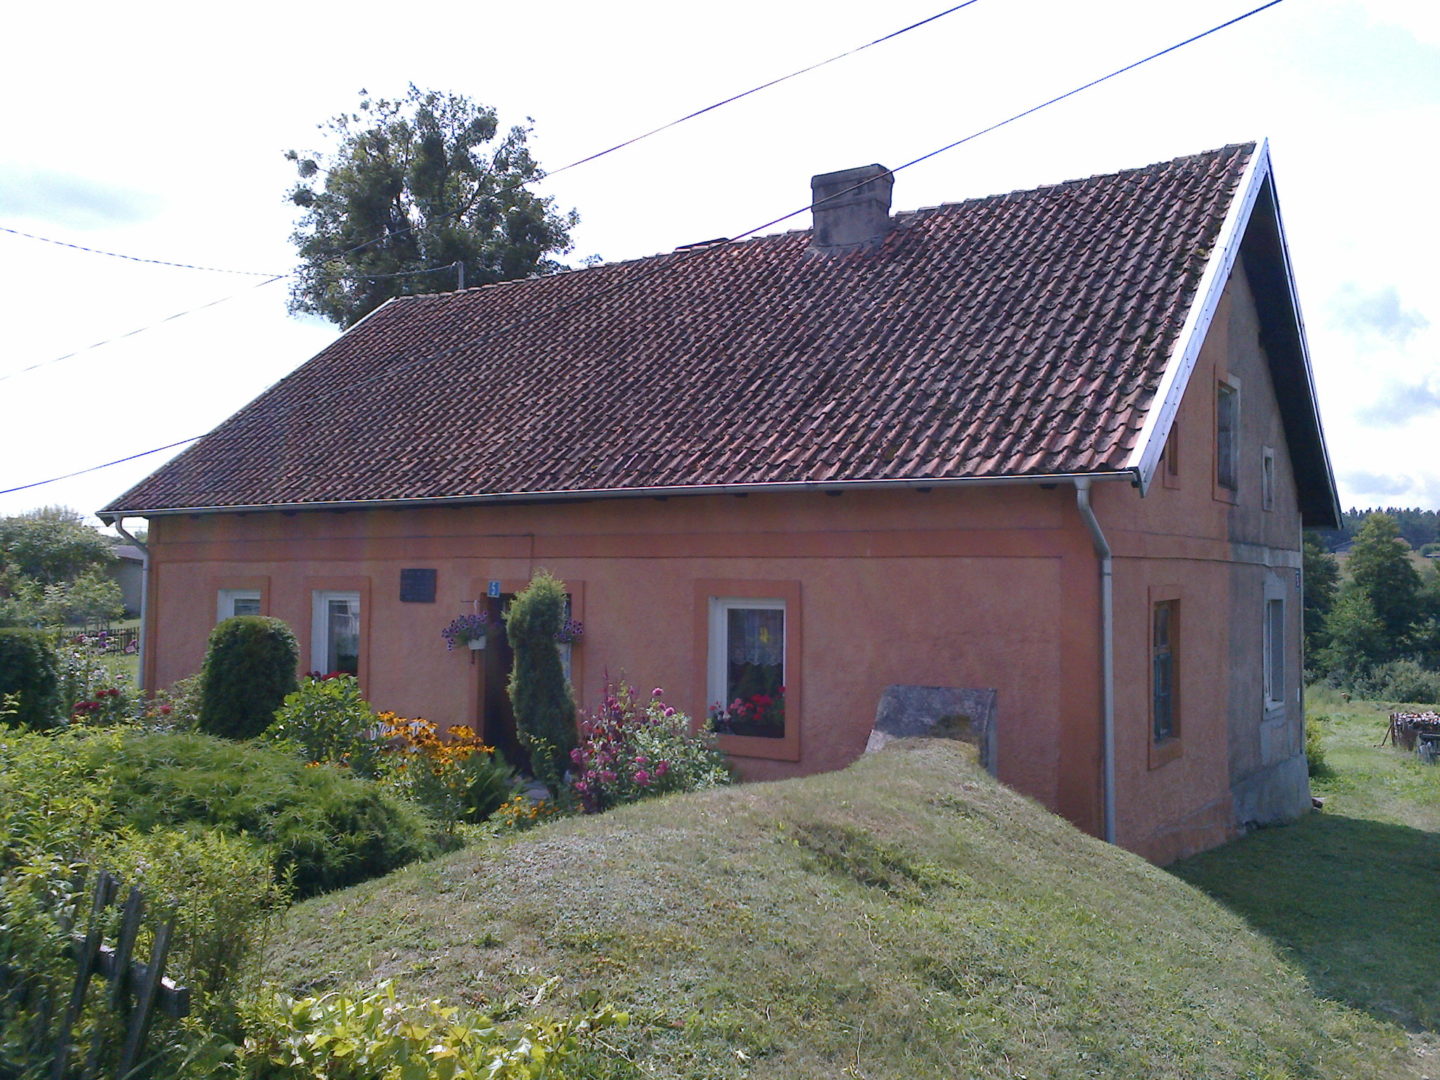 Dom w Lesznie, w którym mieściła się polska szkoła